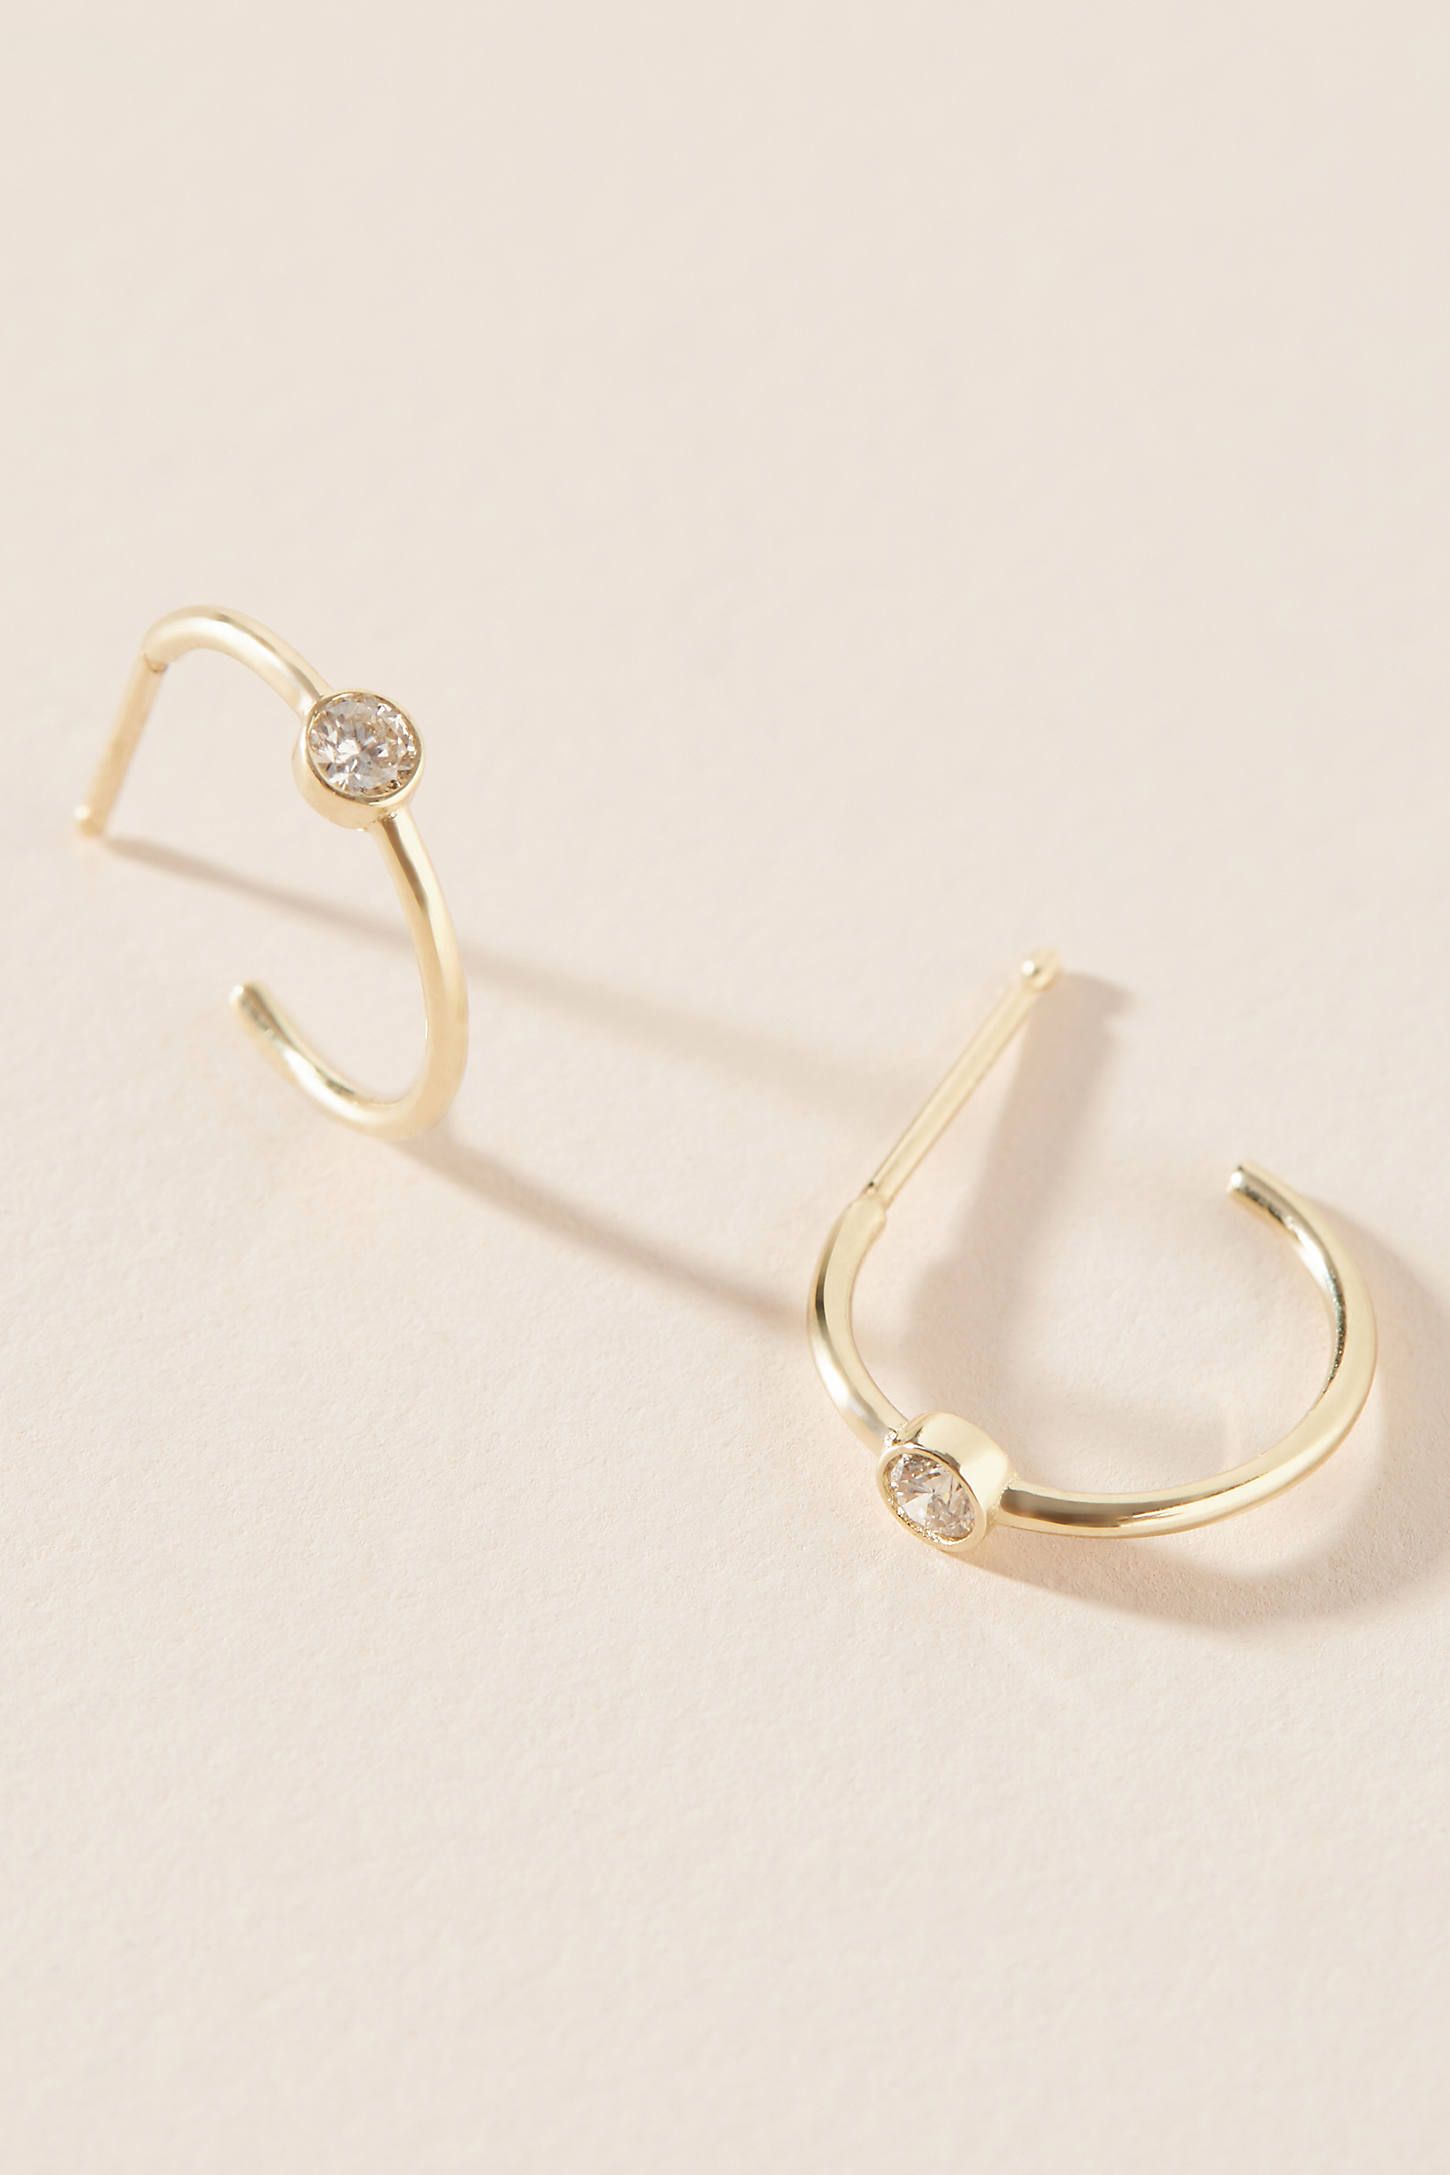 Maya Brenner 14K Gold Birthstone Hoop Earrings | Anthropologie (US)